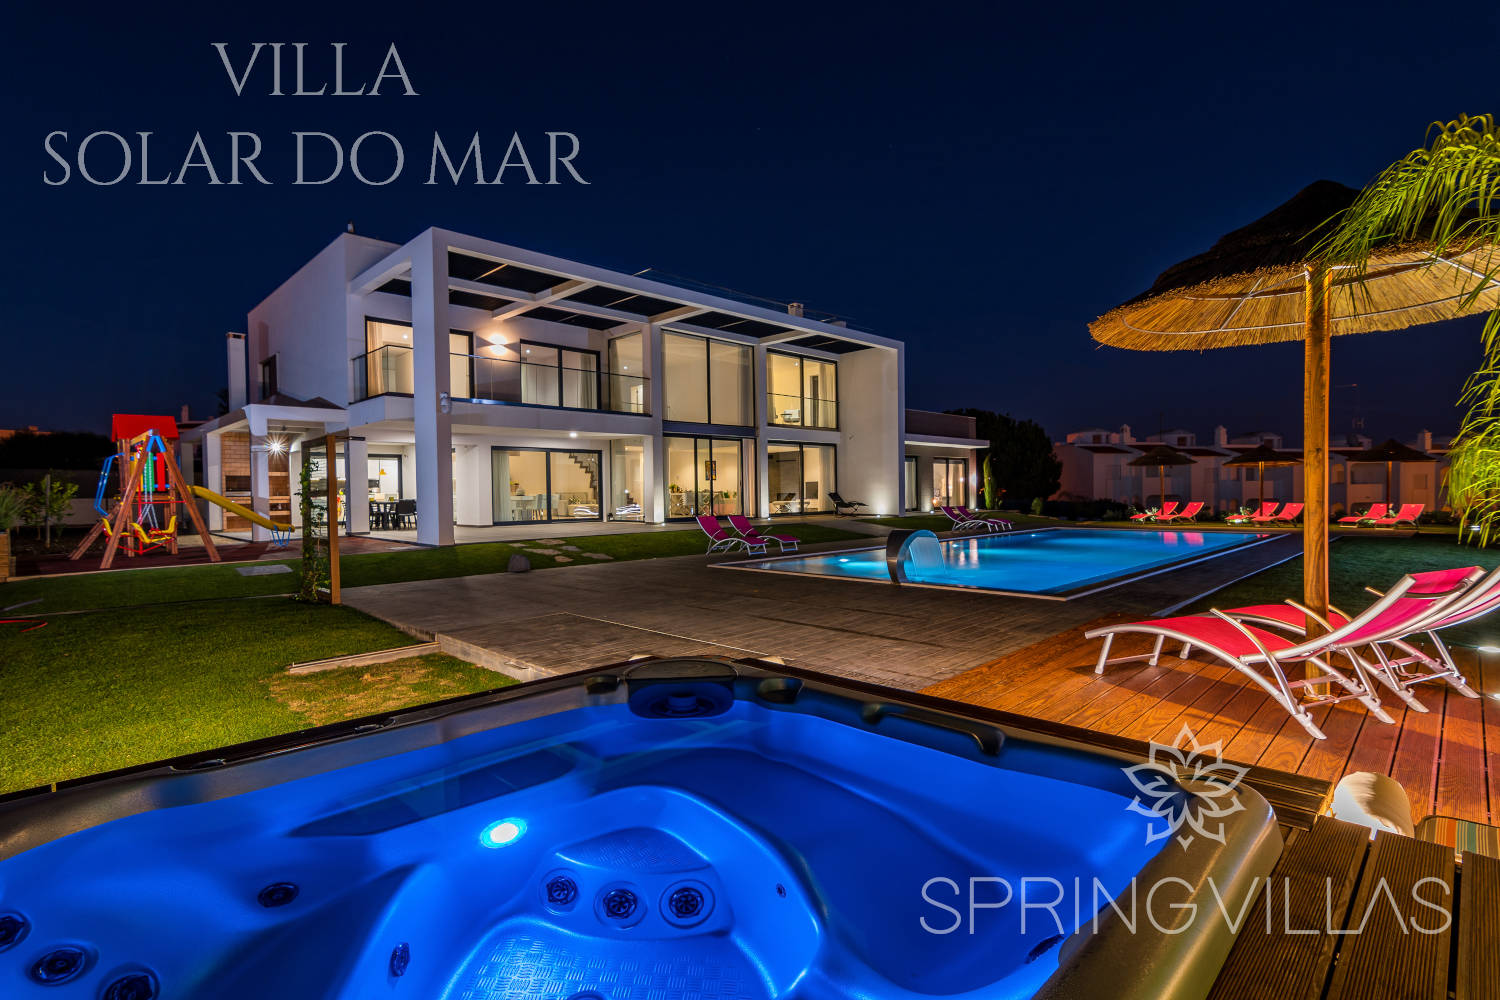 Villa Solar do Mar - Gallery